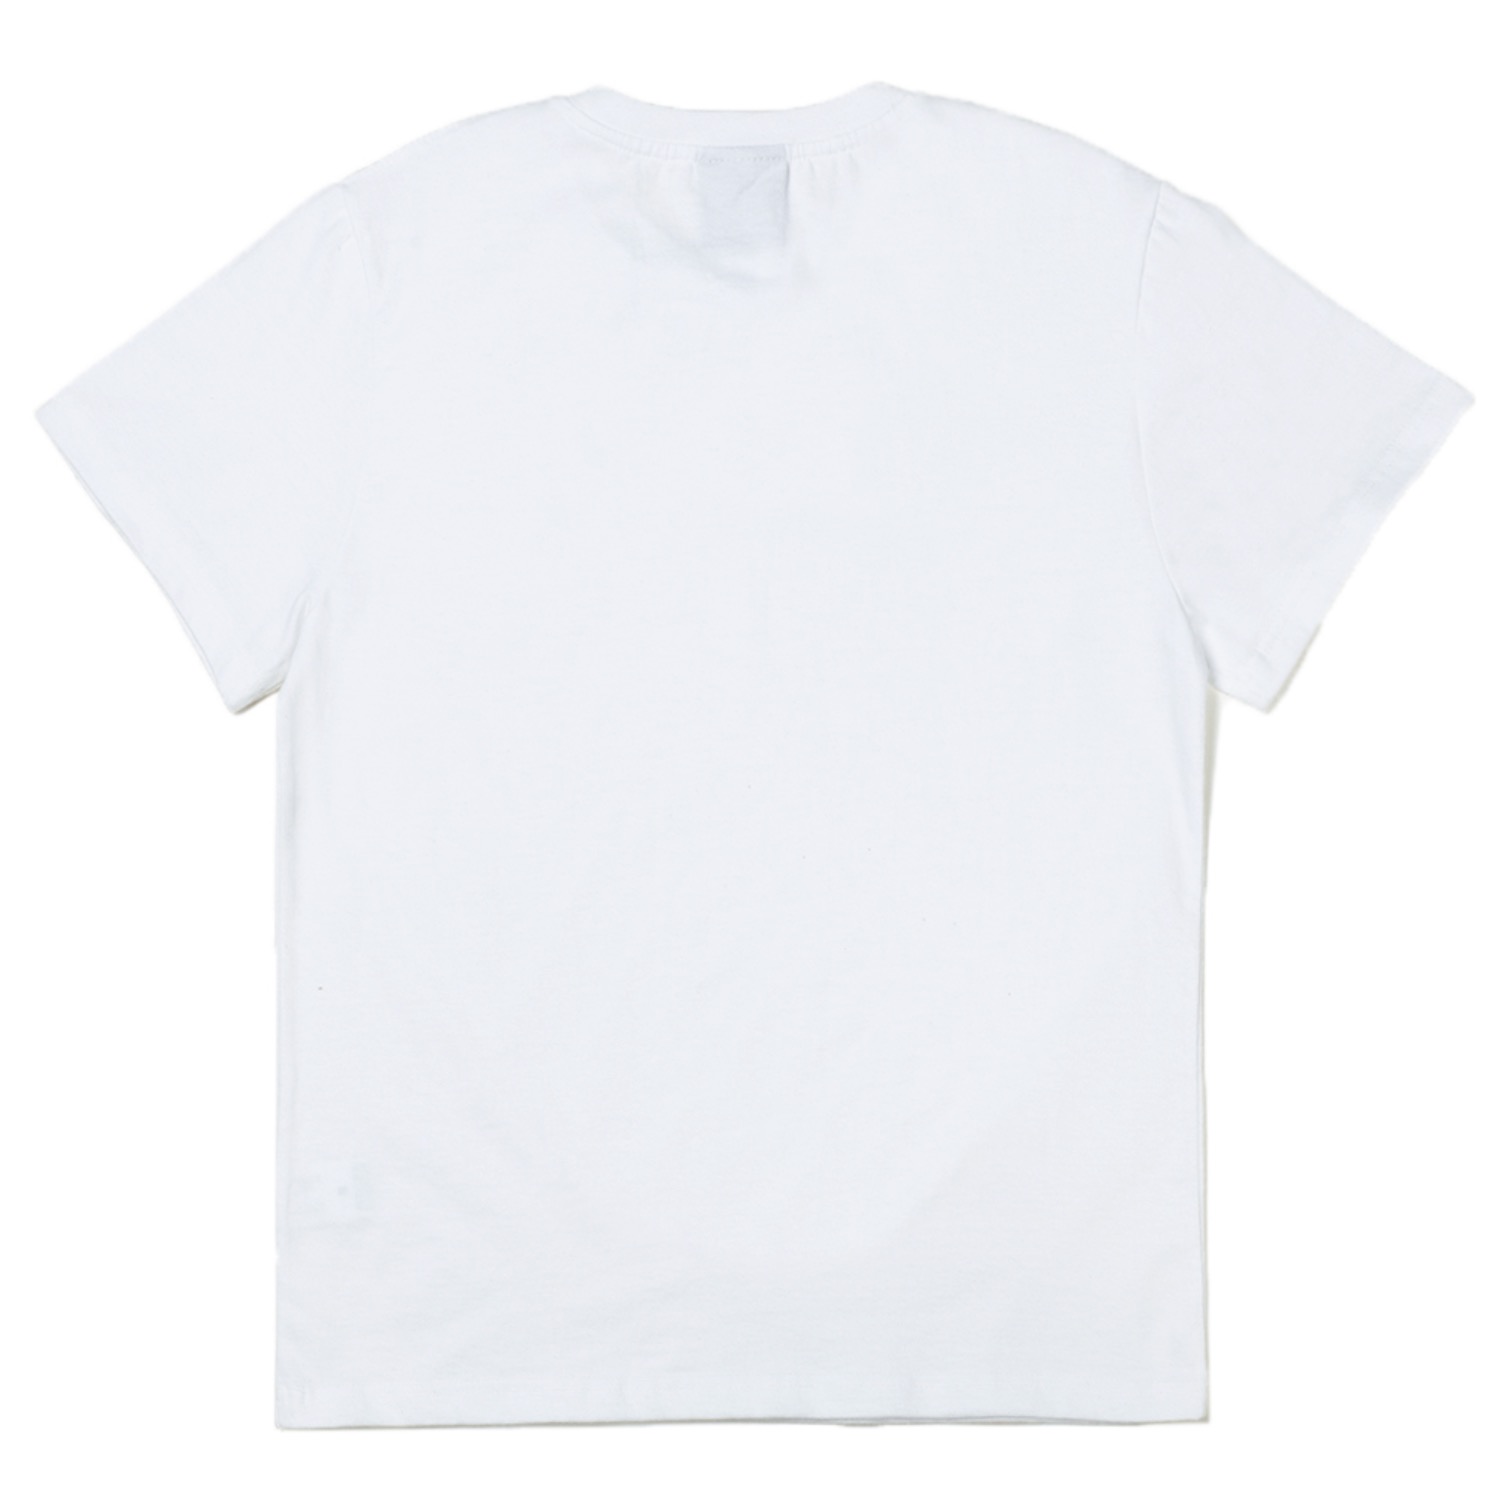 갓 반팔티셔츠 화이트 Gat short sleeve T-shirts (white)